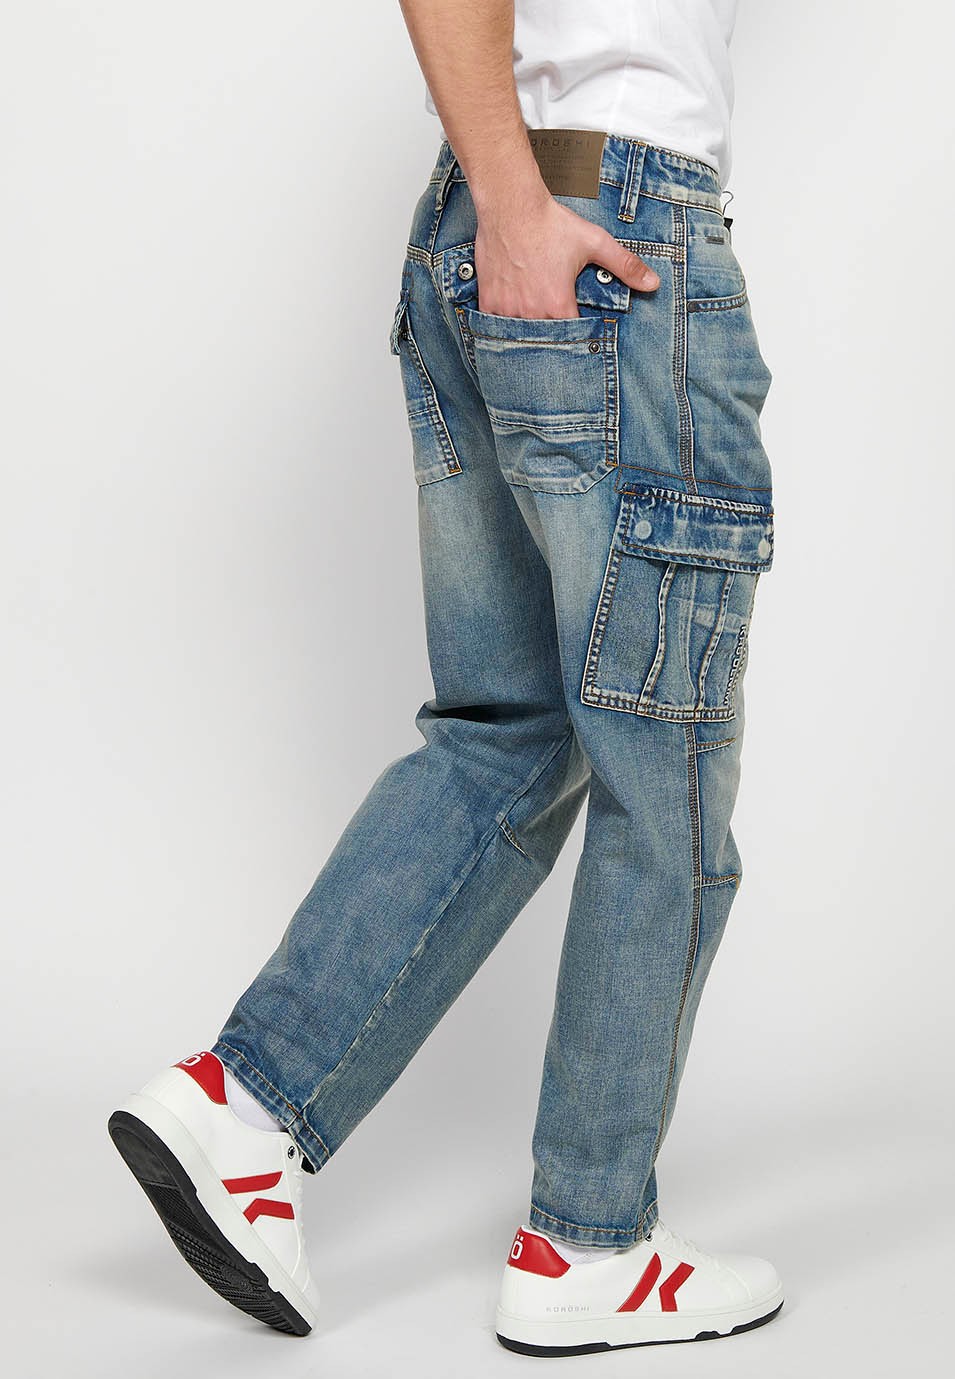 Pantalons càrrec llarg amb Tancament davanter amb cremallera i botó amb Butxaques laterals amb solapa de Color Blau per a Home 7